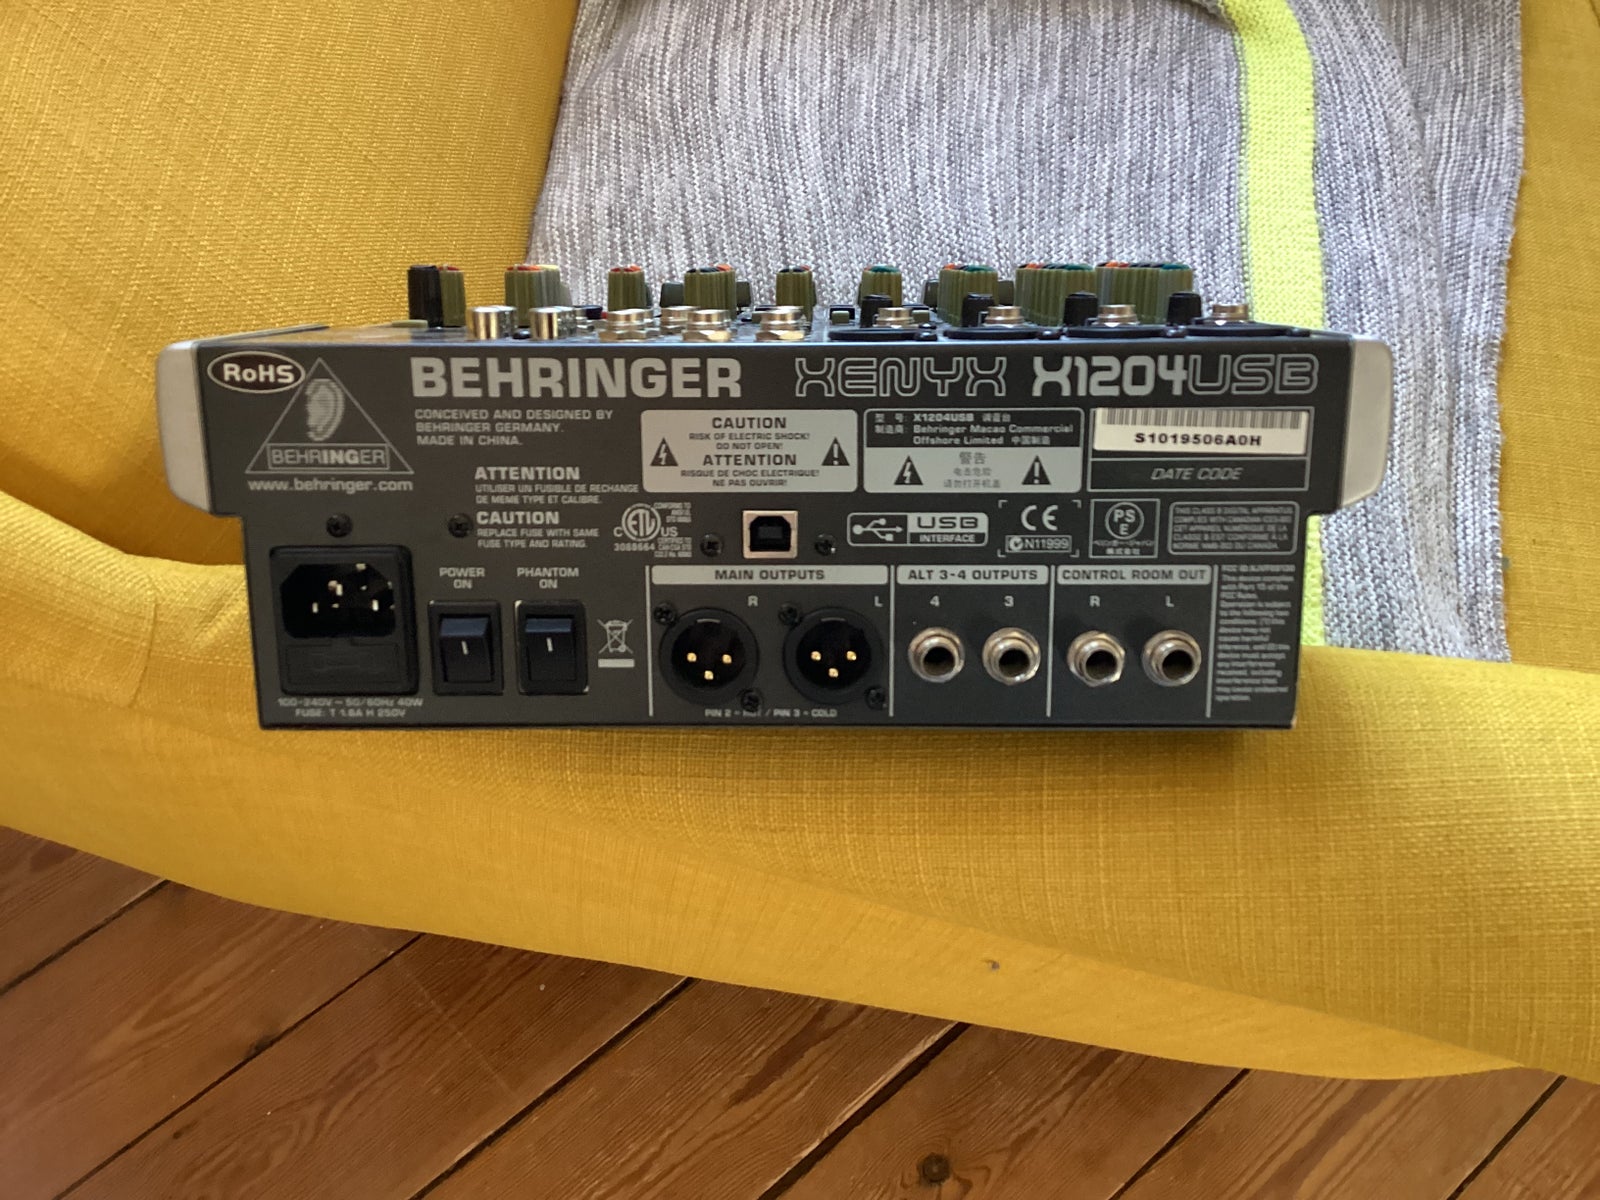 Mixer, Behringer XENYX X1204